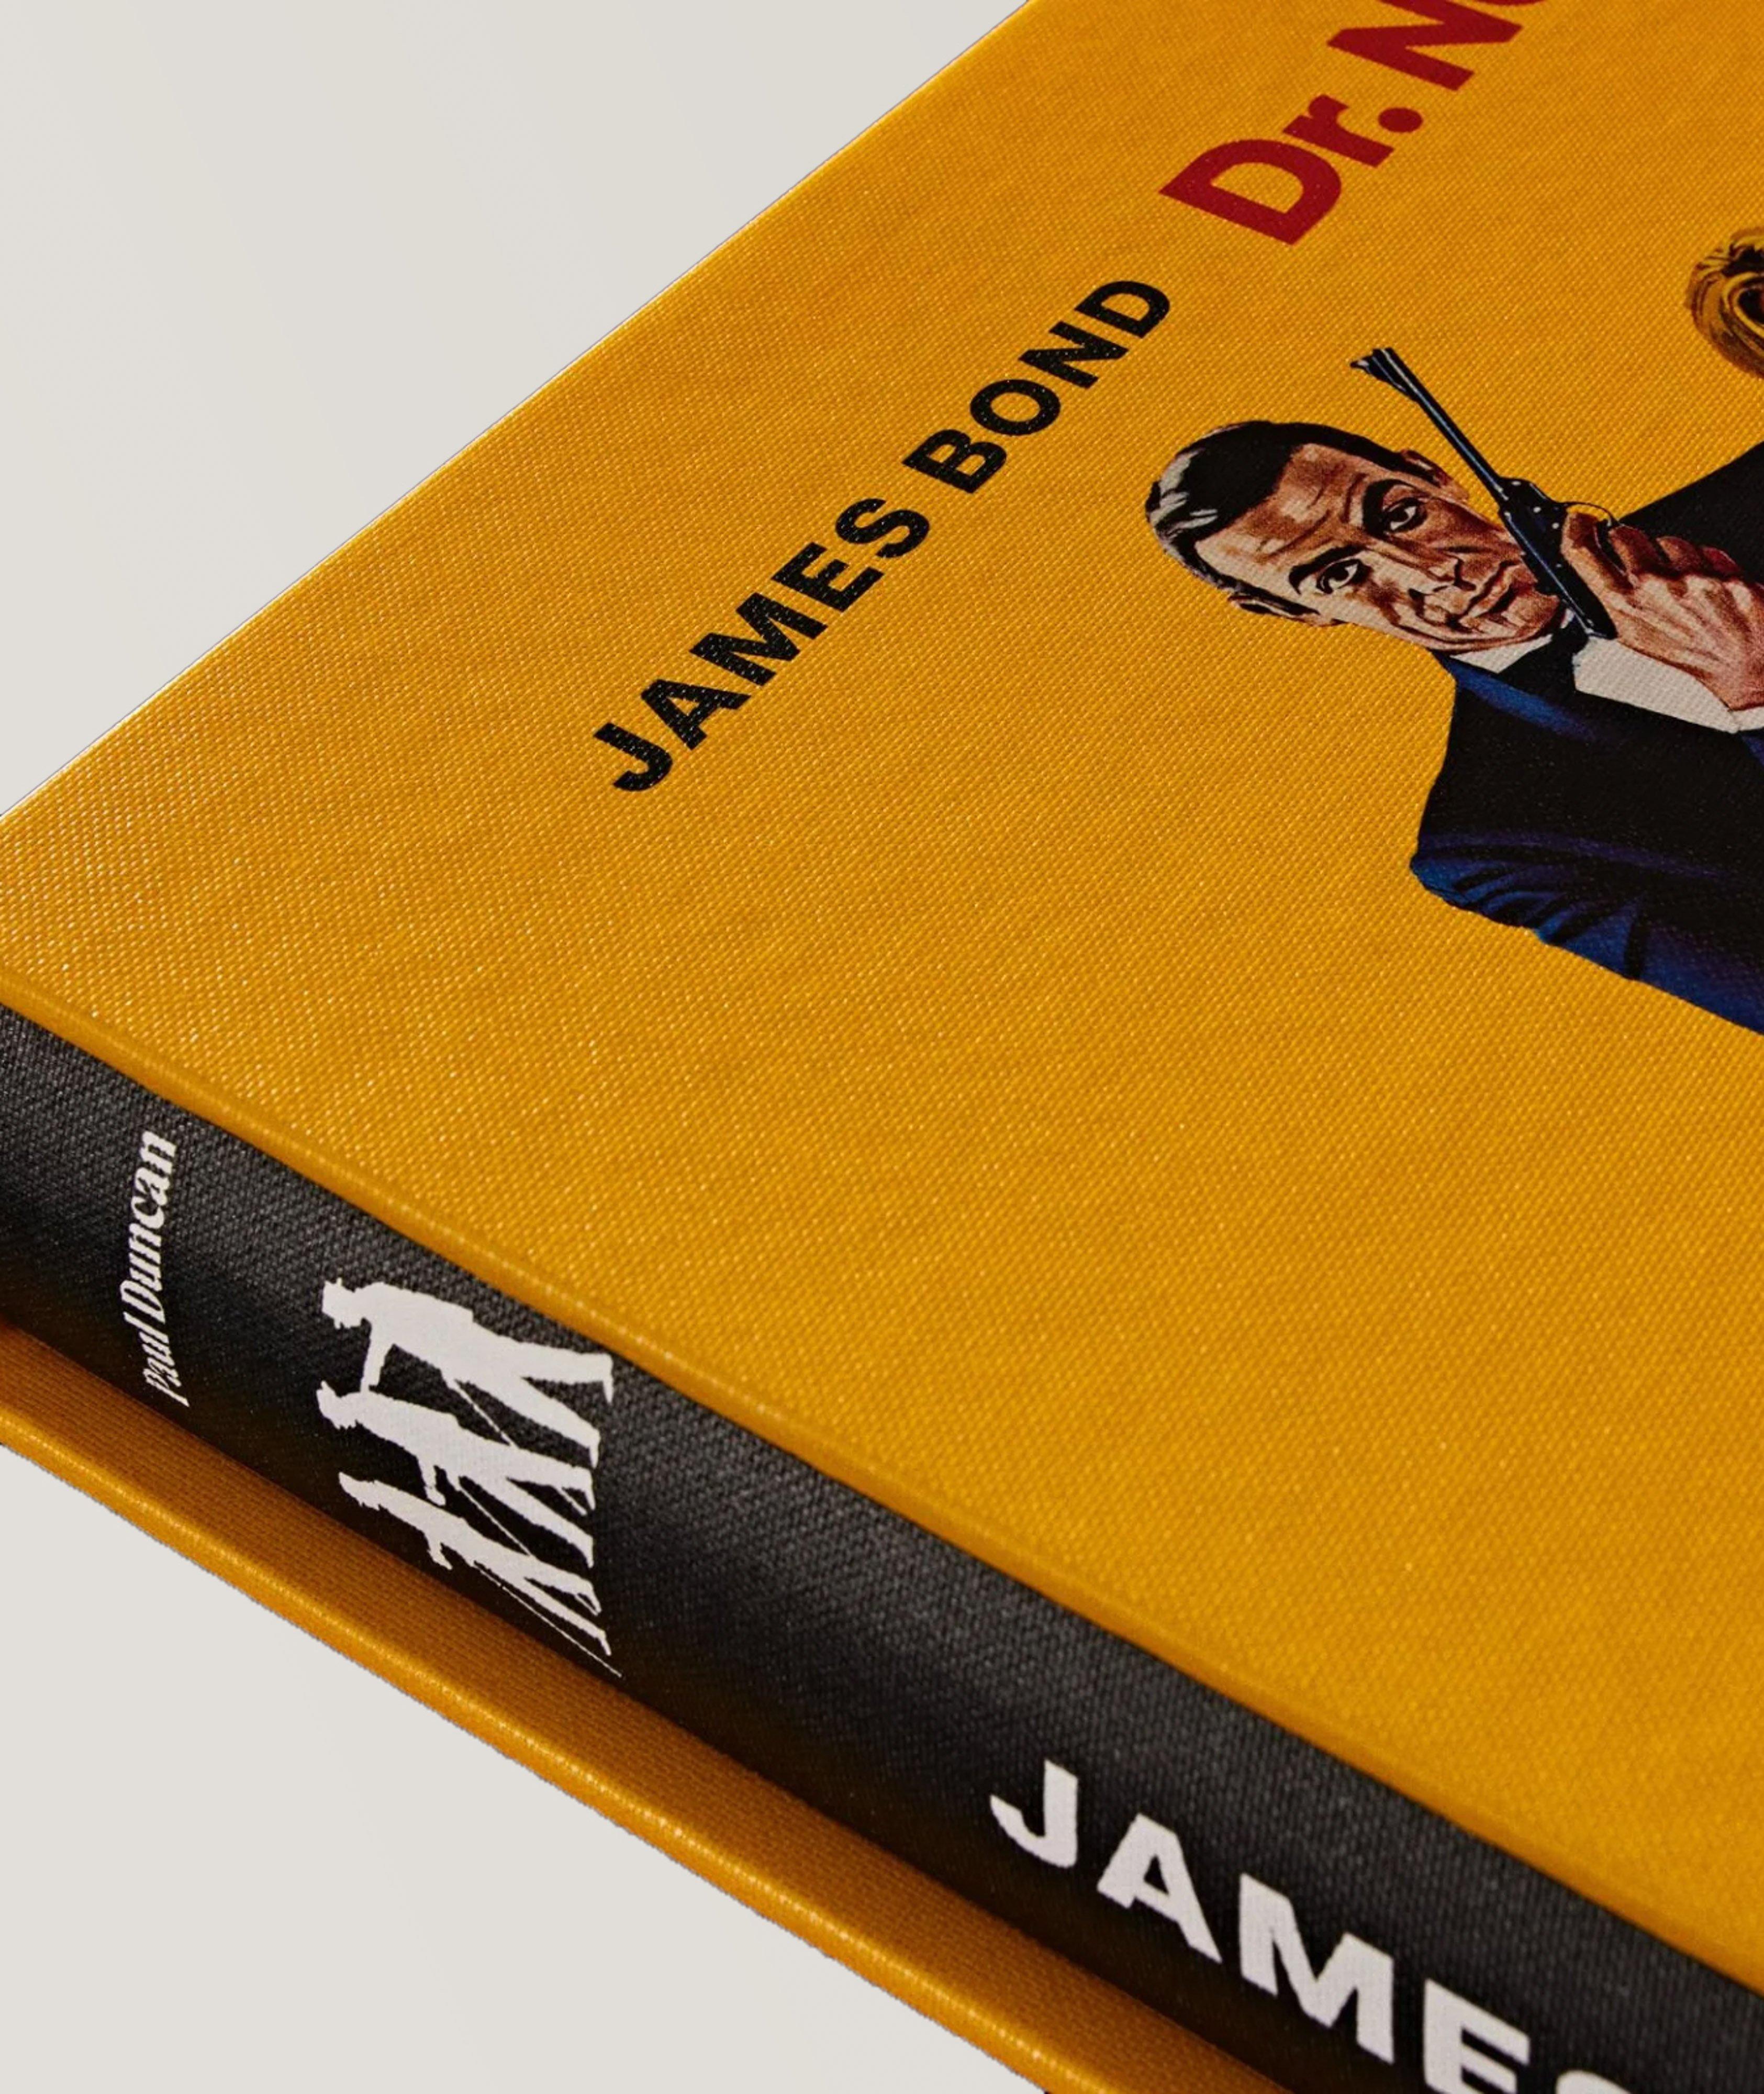 Livre « James Bond Dr. No », édition limitée image 2